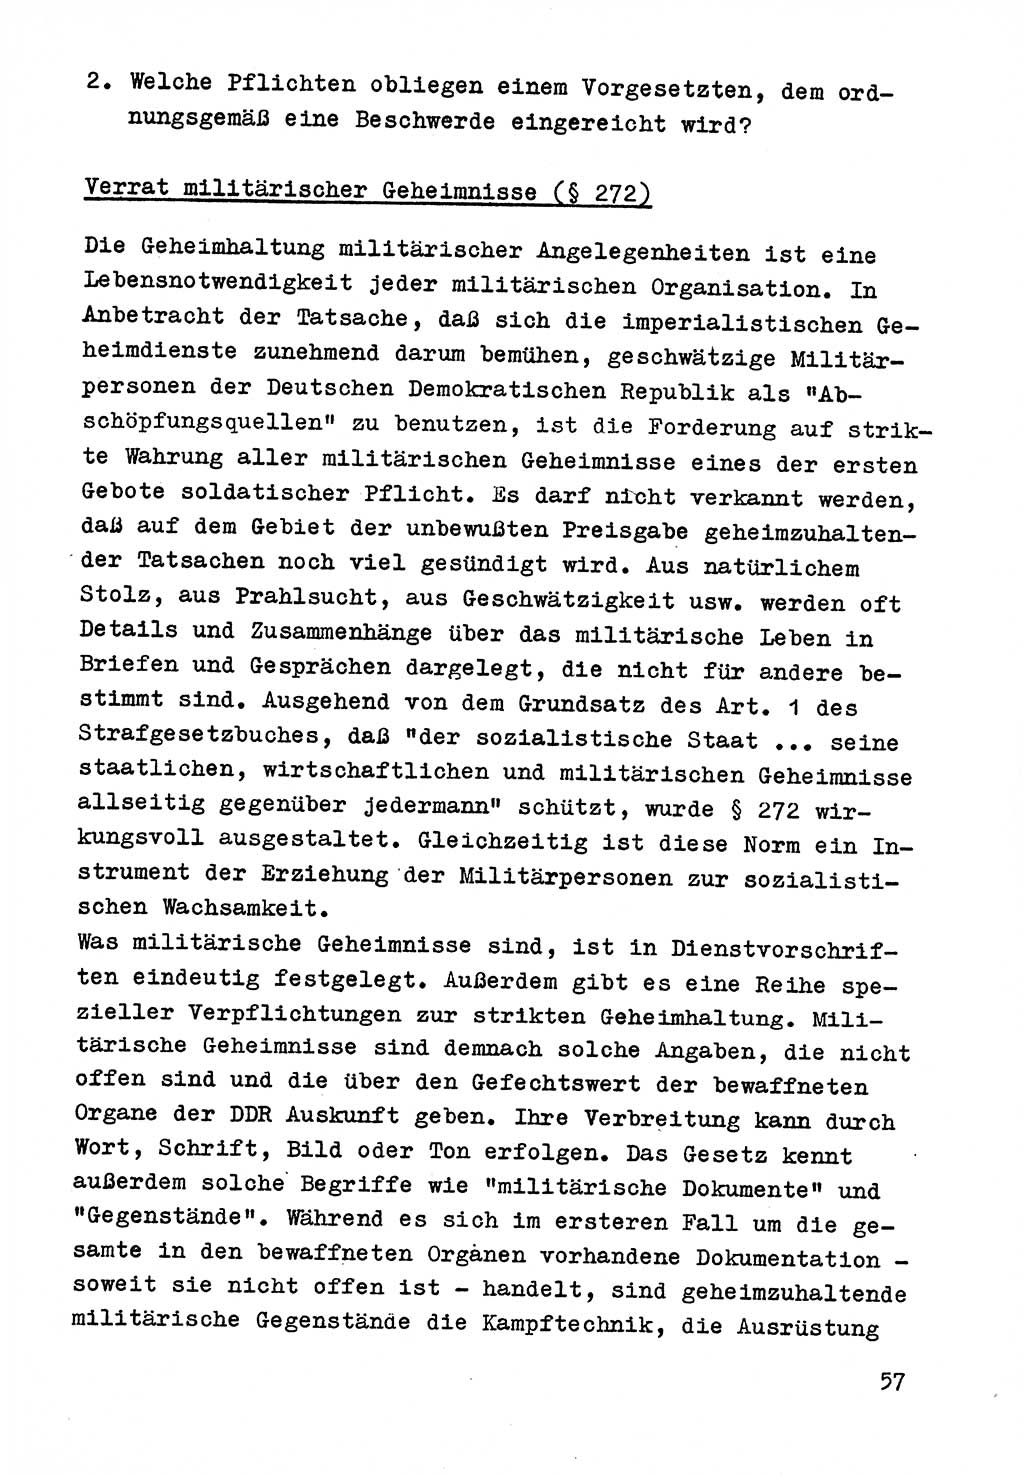 Strafrecht der DDR (Deutsche Demokratische Republik), Besonderer Teil, Lehrmaterial, Heft 9 1969, Seite 57 (Strafr. DDR BT Lehrmat. H. 9 1969, S. 57)